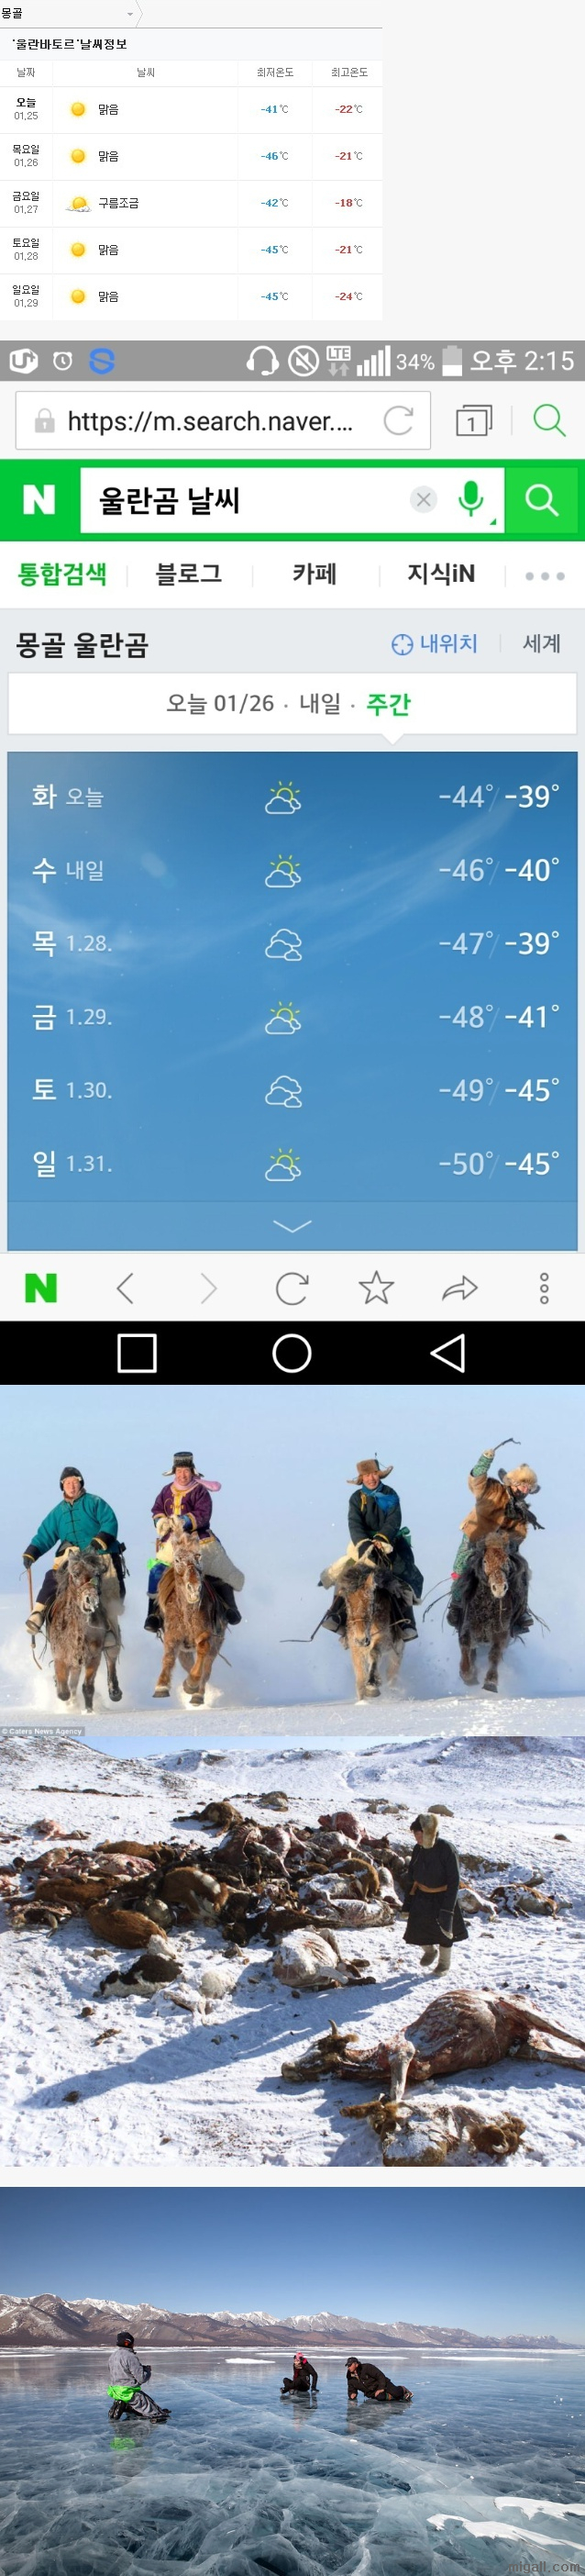 전 세계에서 가장 추운 나라.jpg